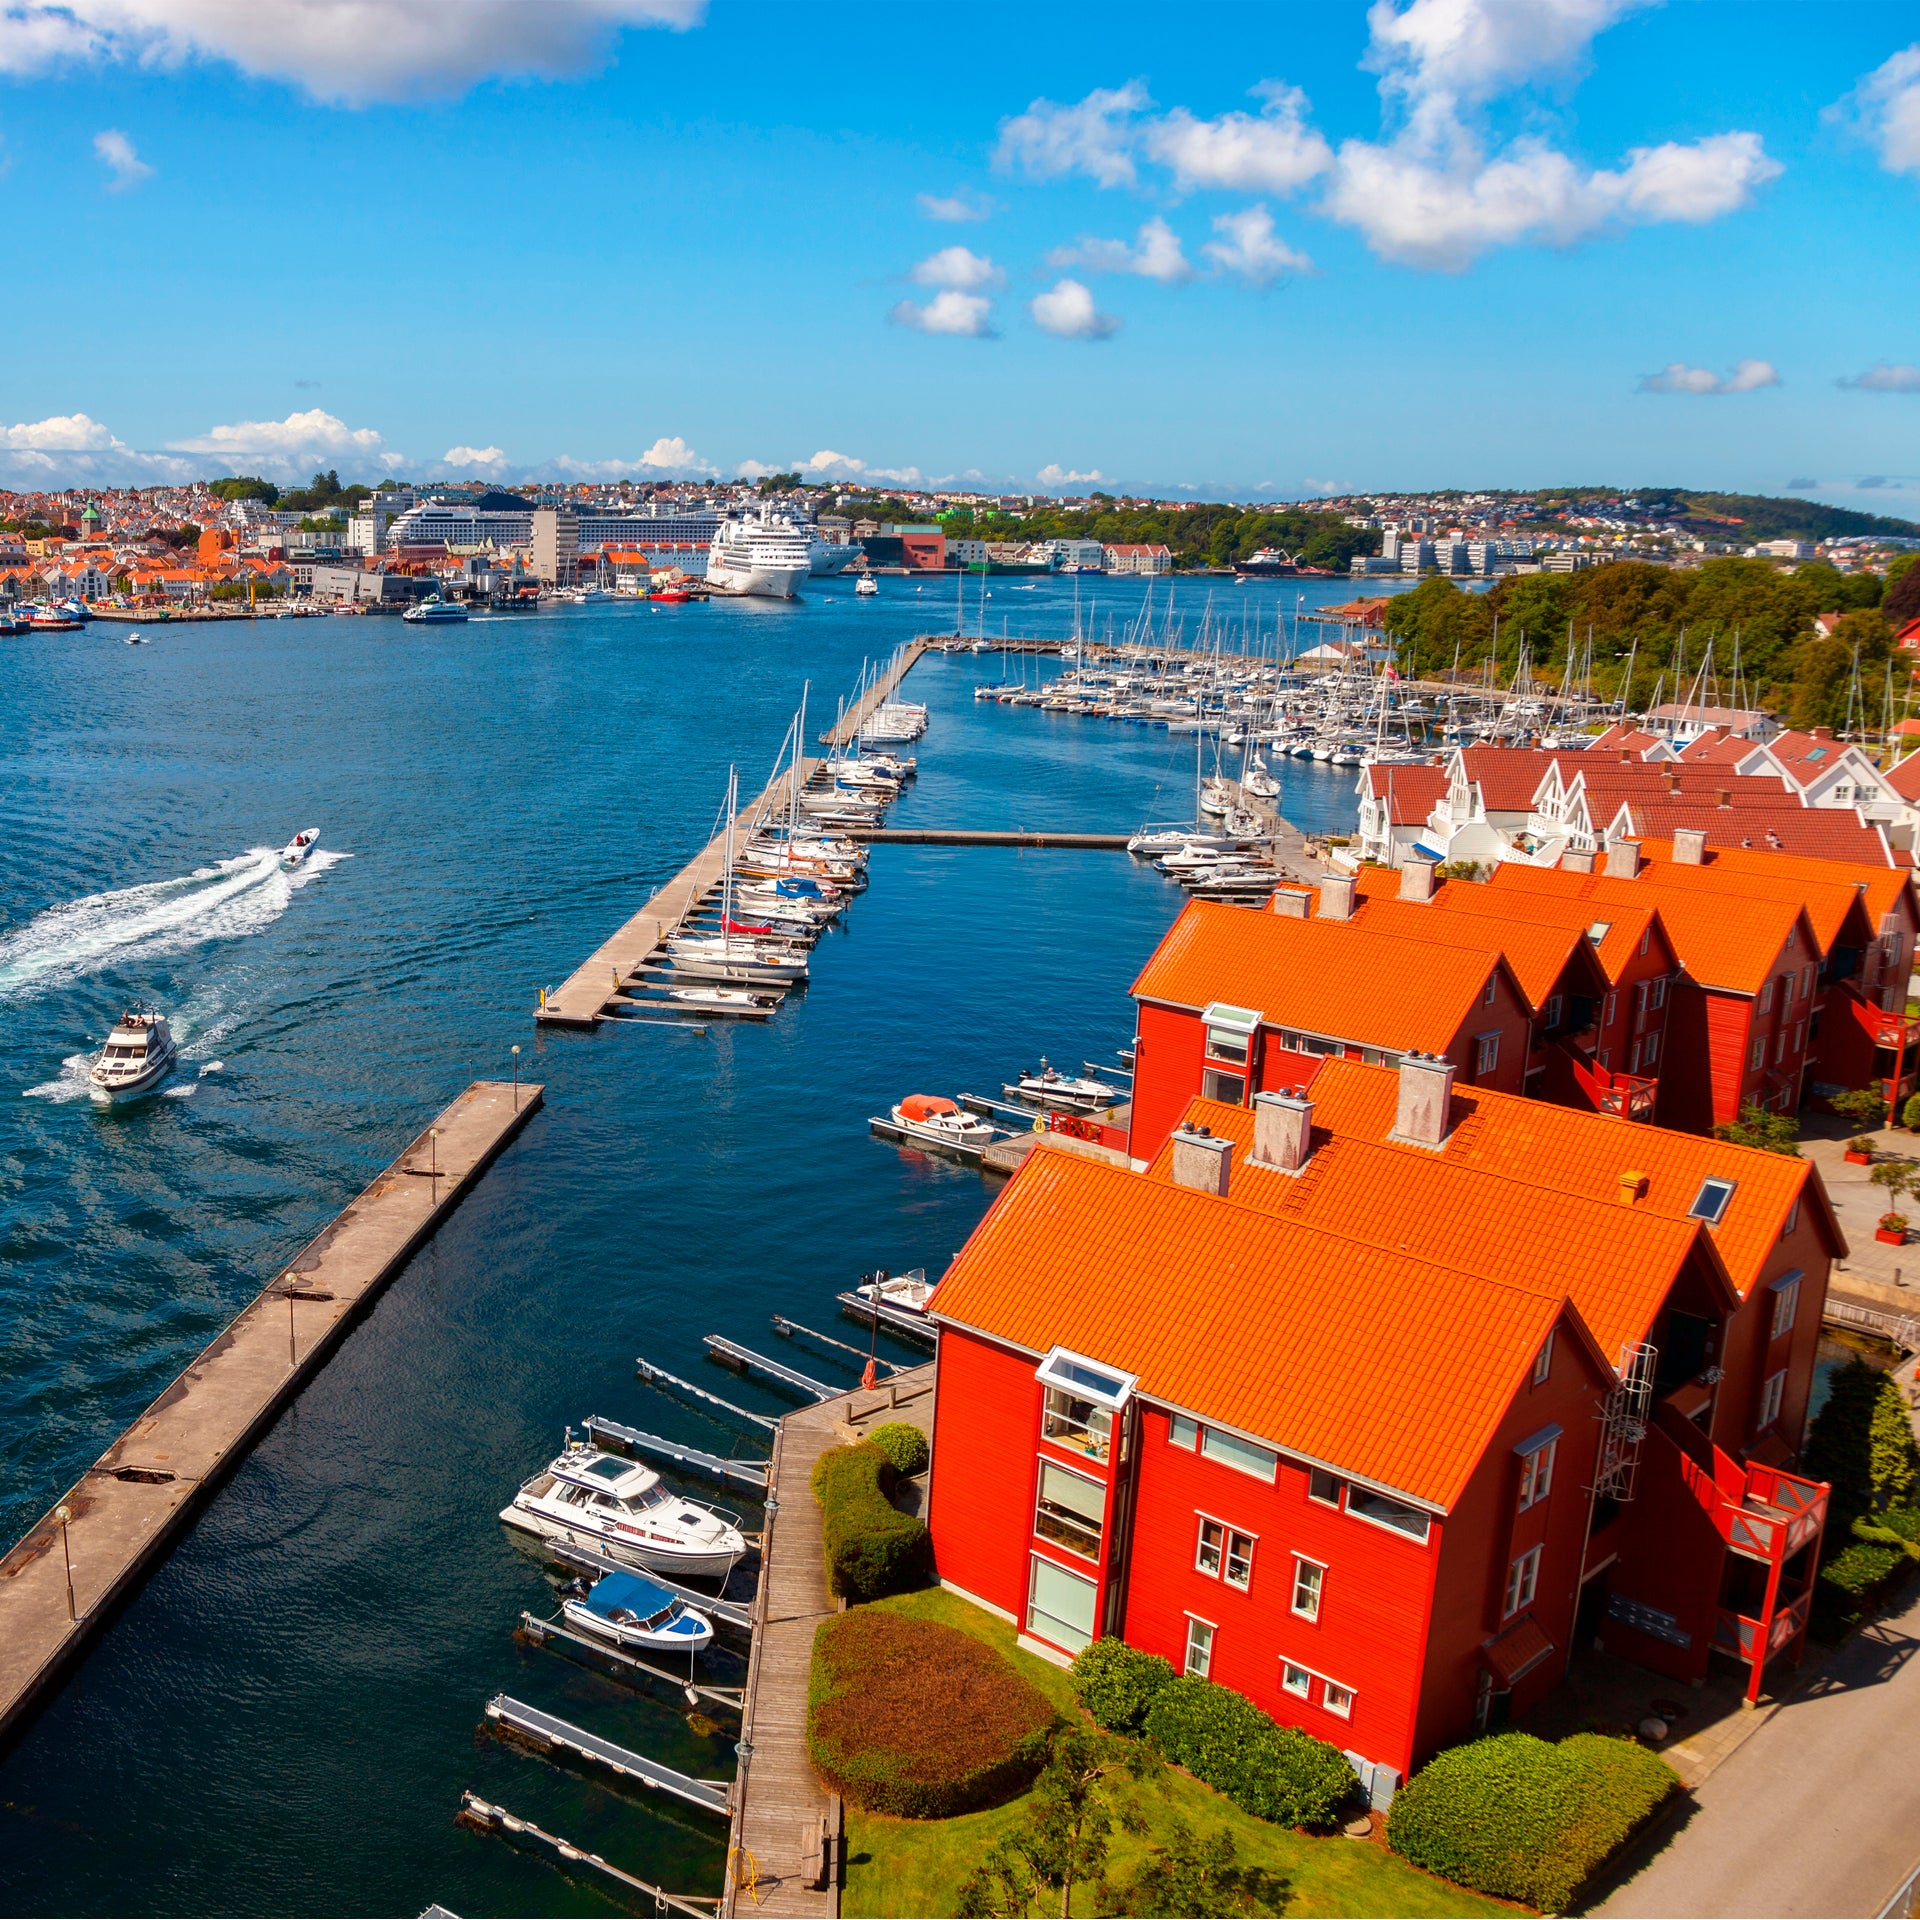 Zeilboot charter in de kleurrijke haven van Noorwegen